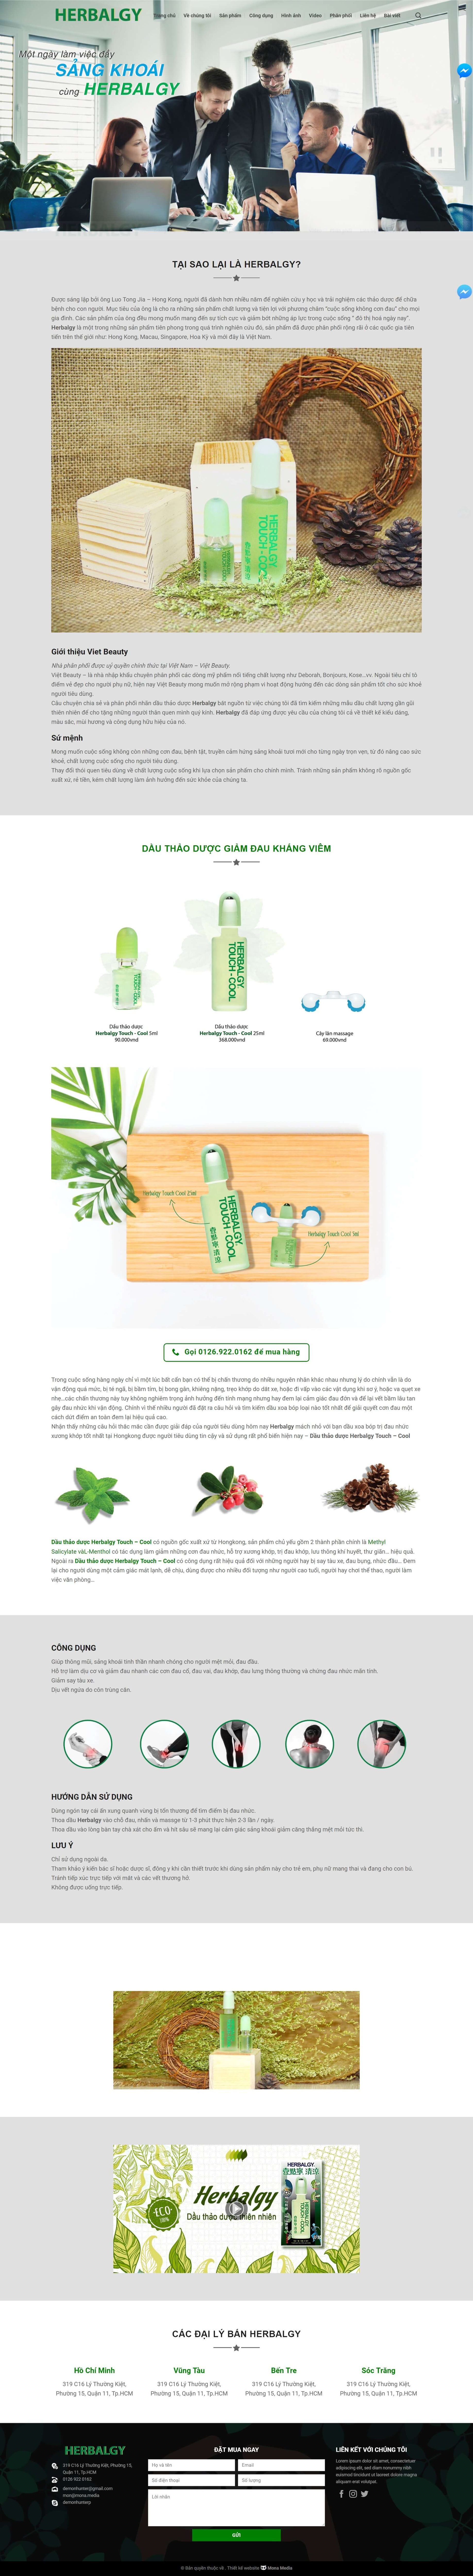 Mẫu website Landingpage giới thiệu sản phẩm tương tự Herbalgy